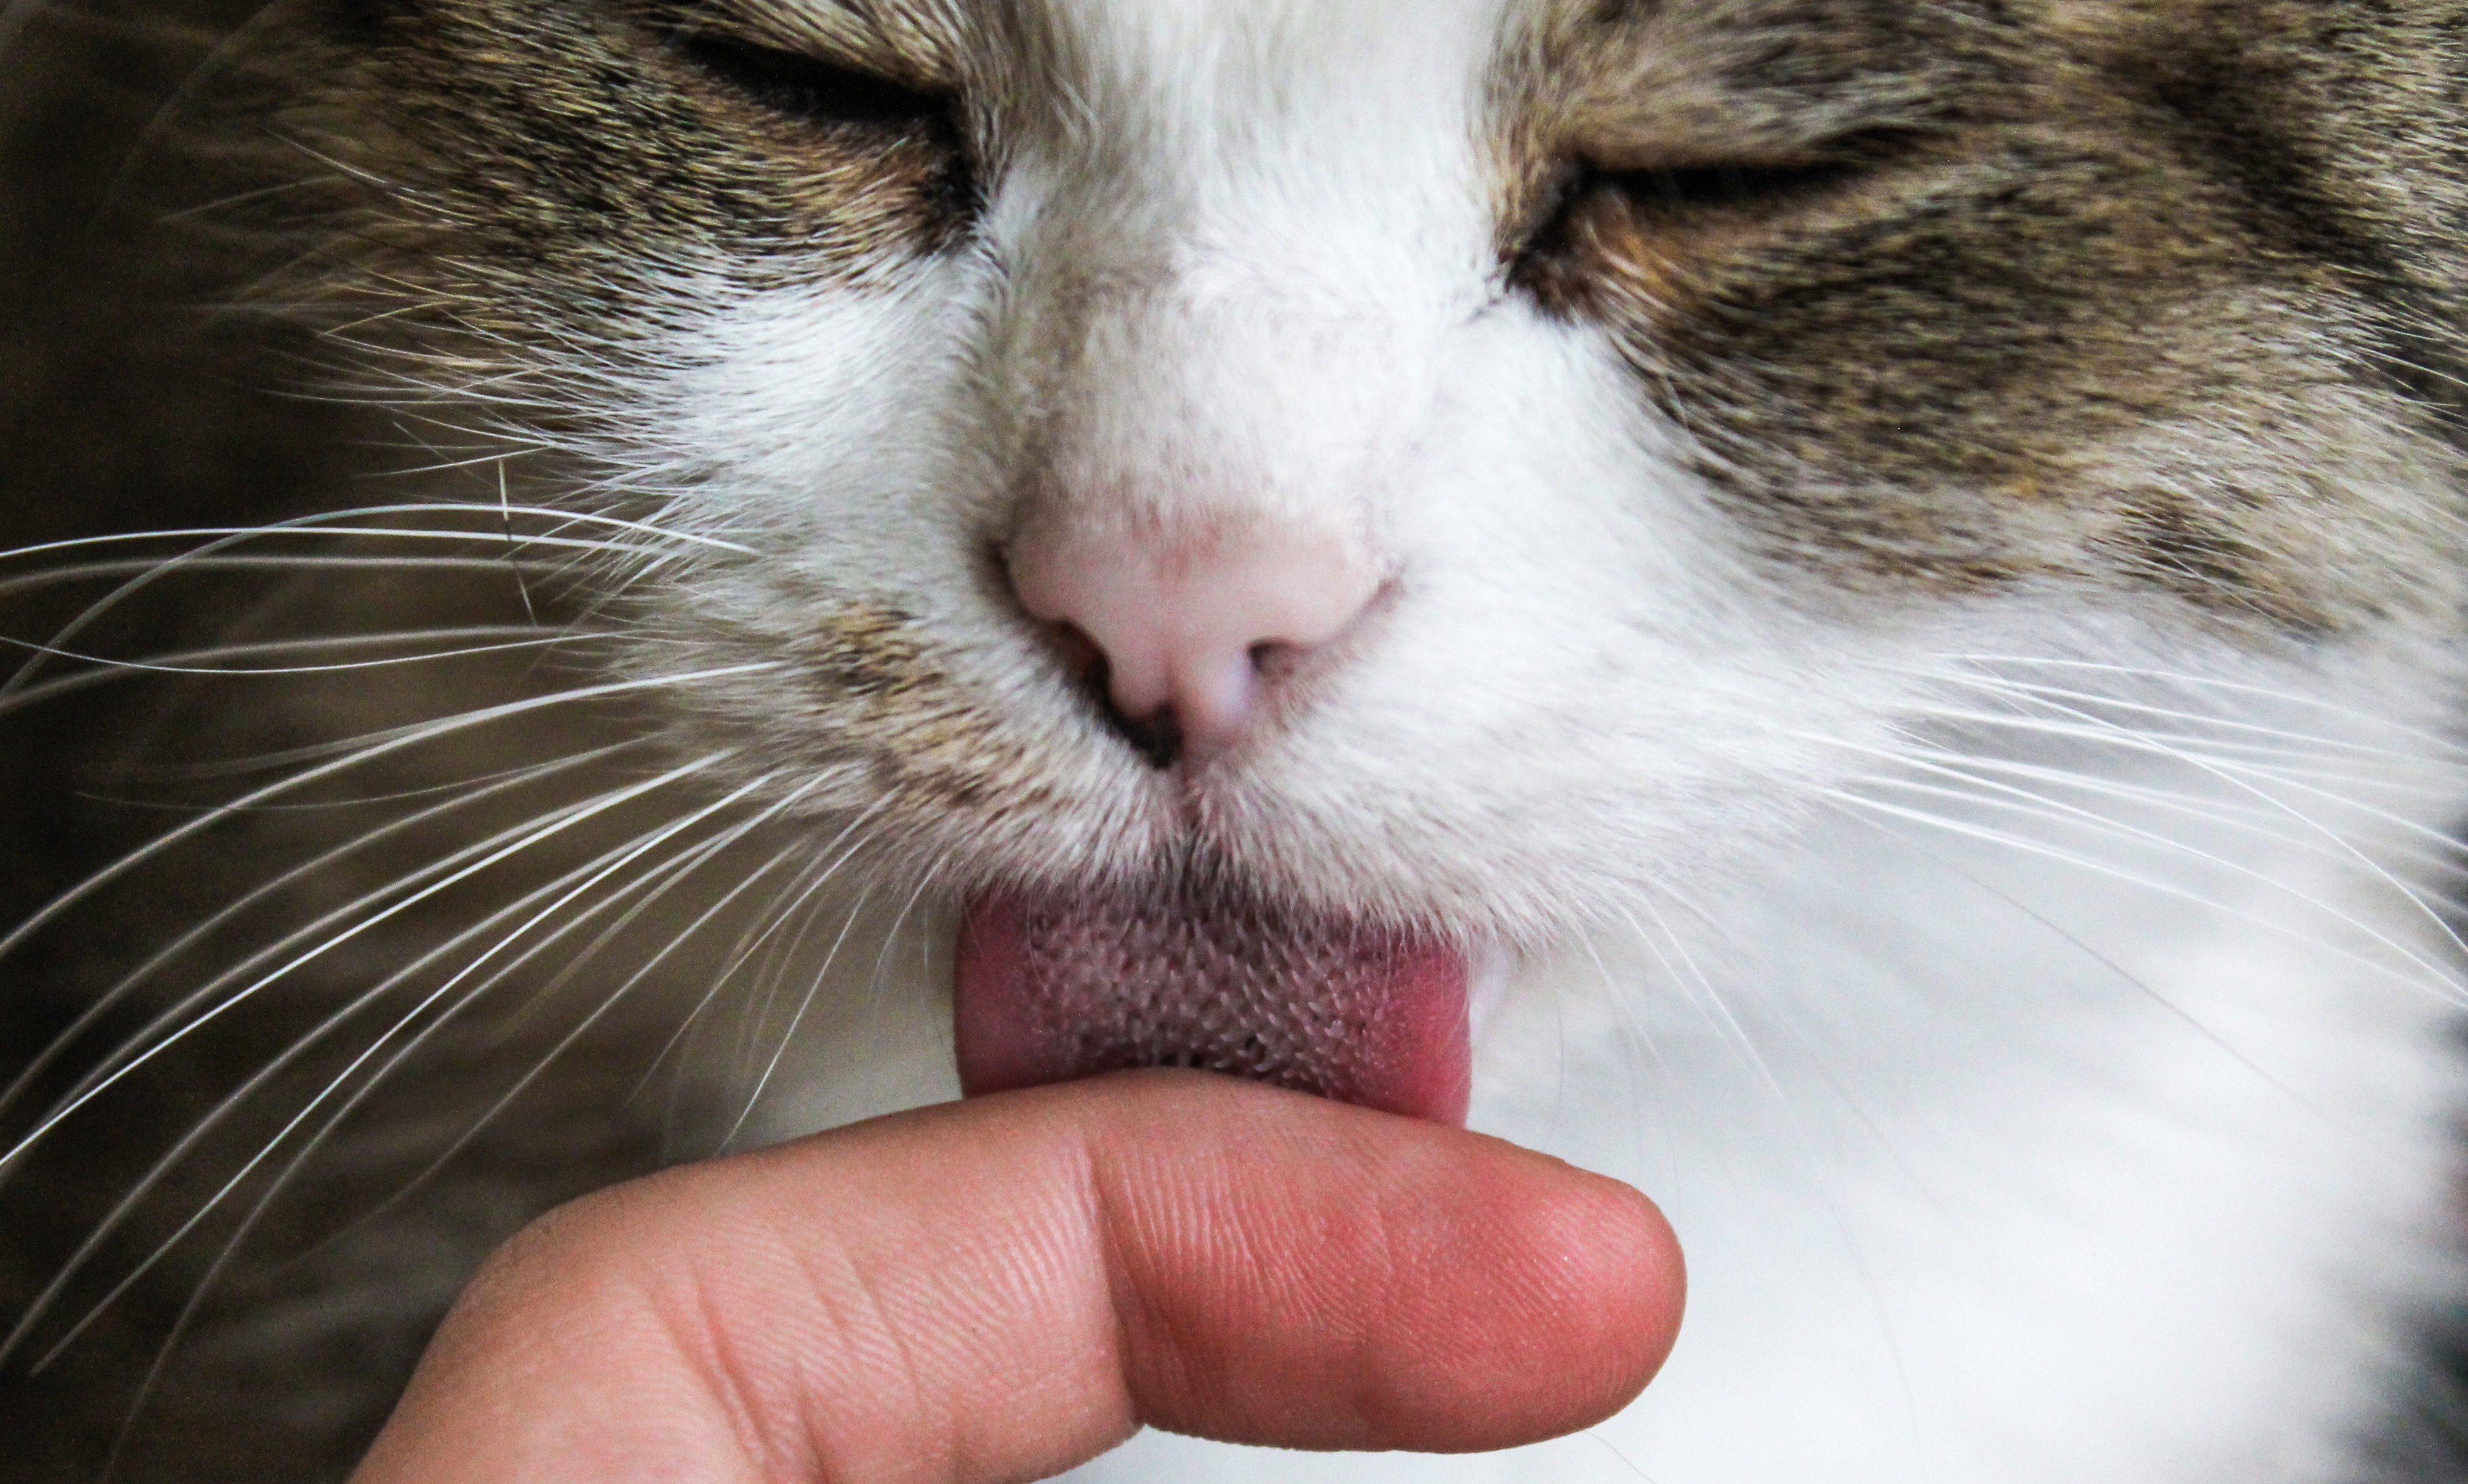 5 привычек хозяев котов, которые заставляют нервничать их домашних питомцев